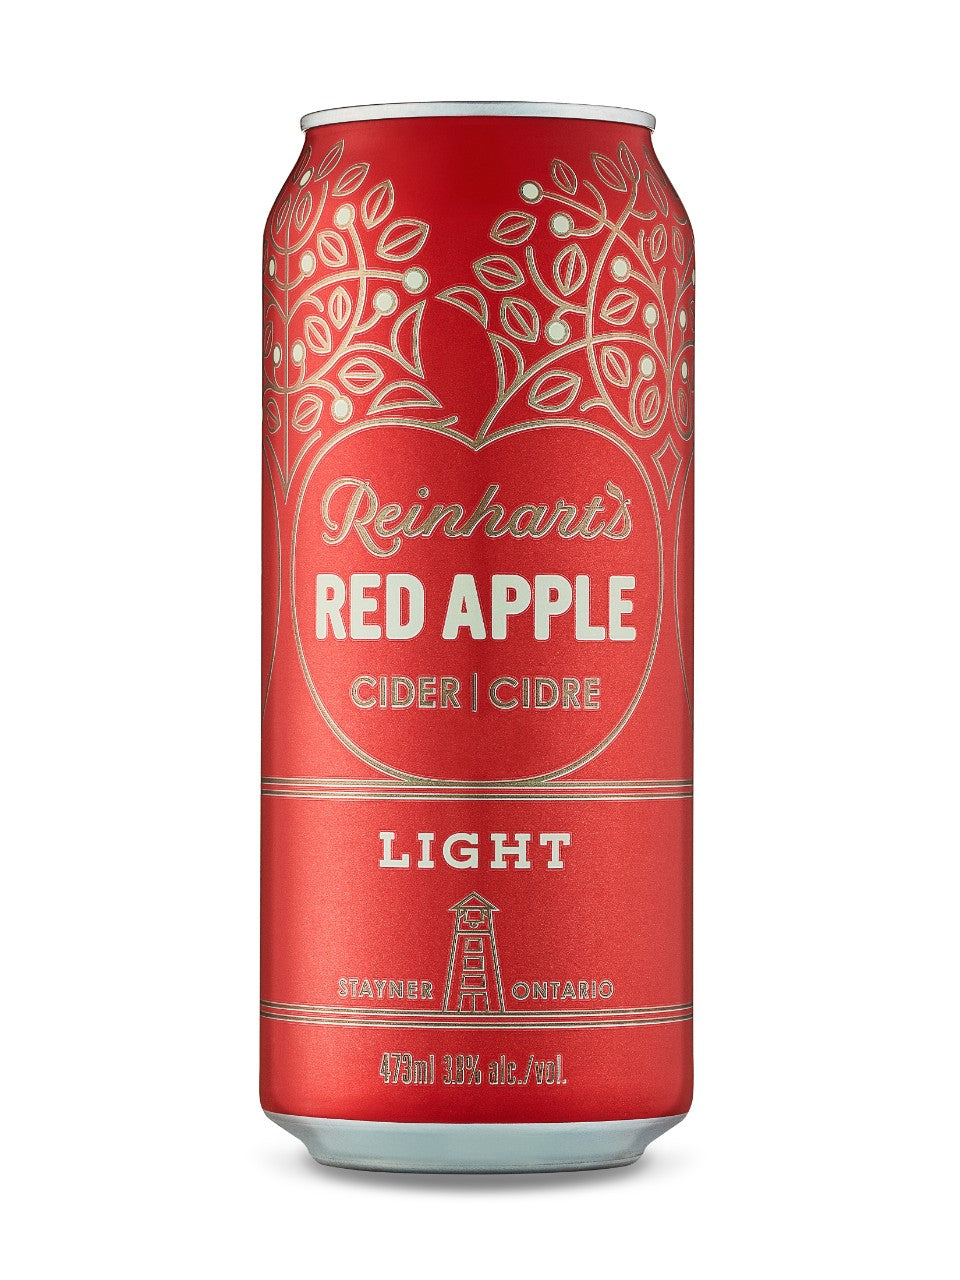 Reinhart's Red Apple Light Cider 473 mL can